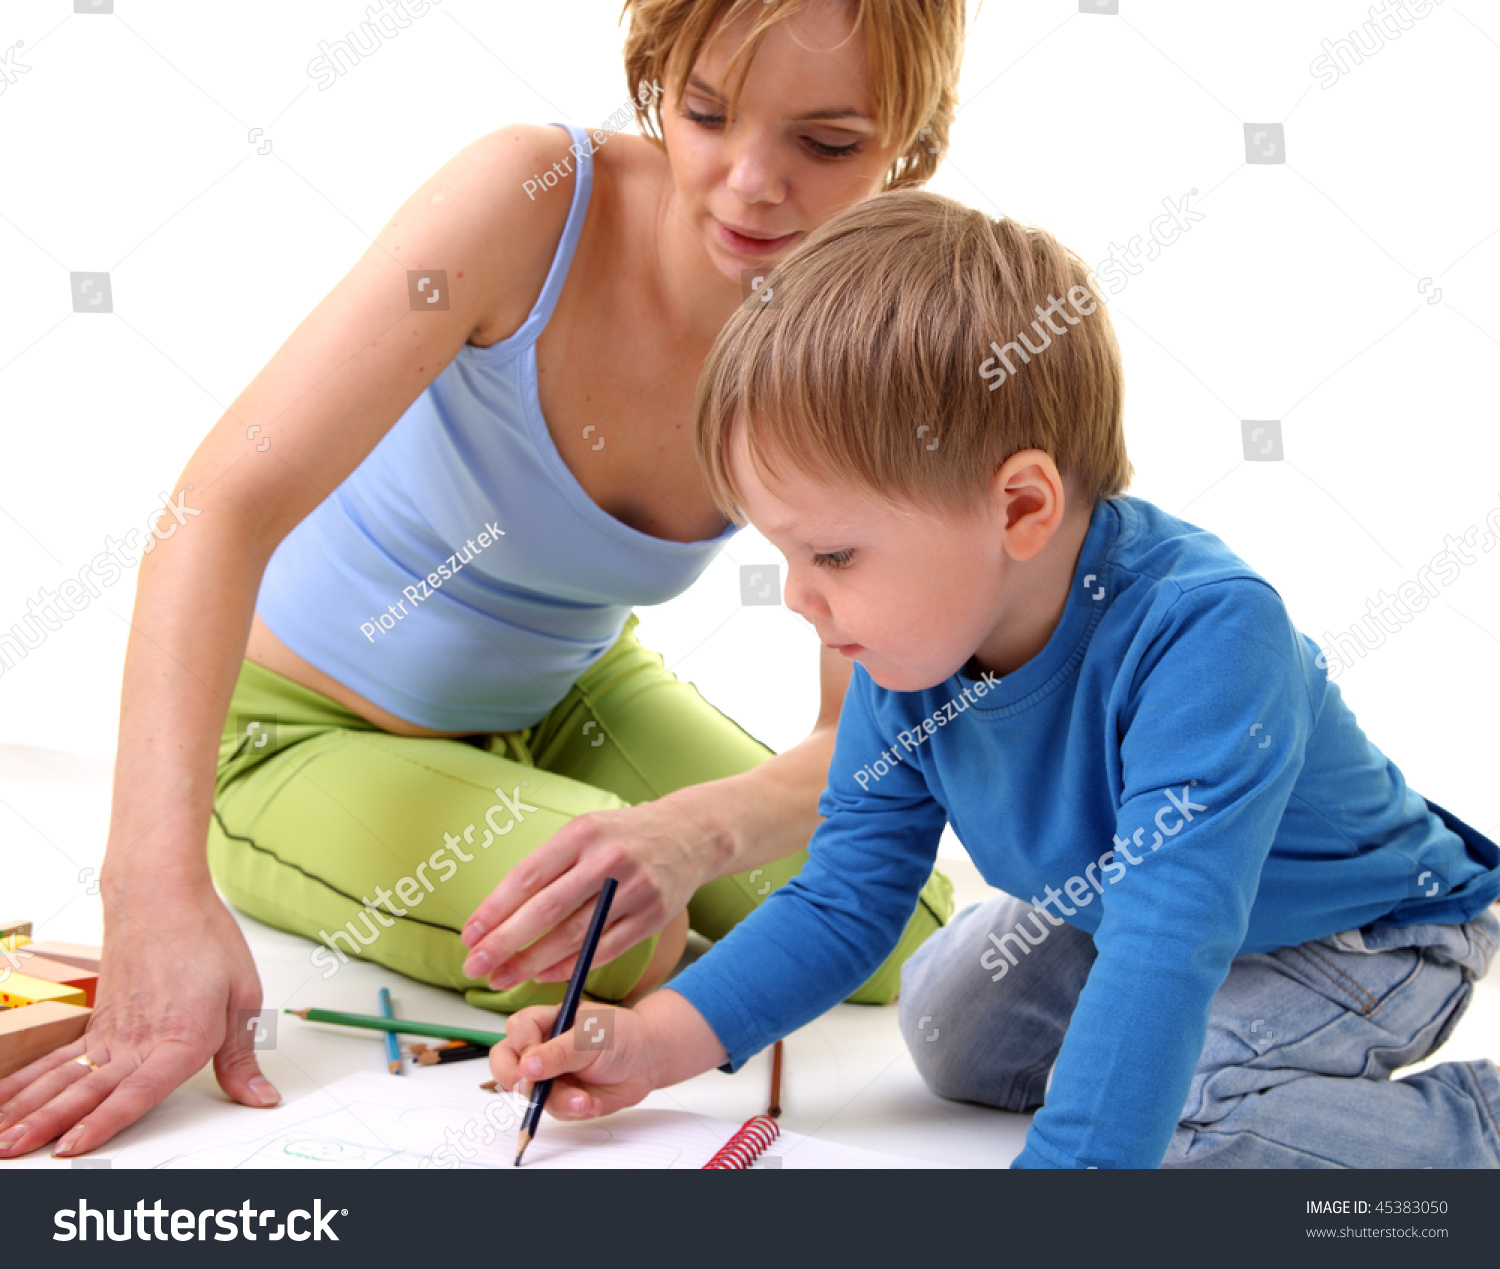 Русская мама учит сына заниматься. Красивая мама учит сына. Зрелая обучает мальчика. Мать учит ребёнка секксу. Фото как мама учит детей.